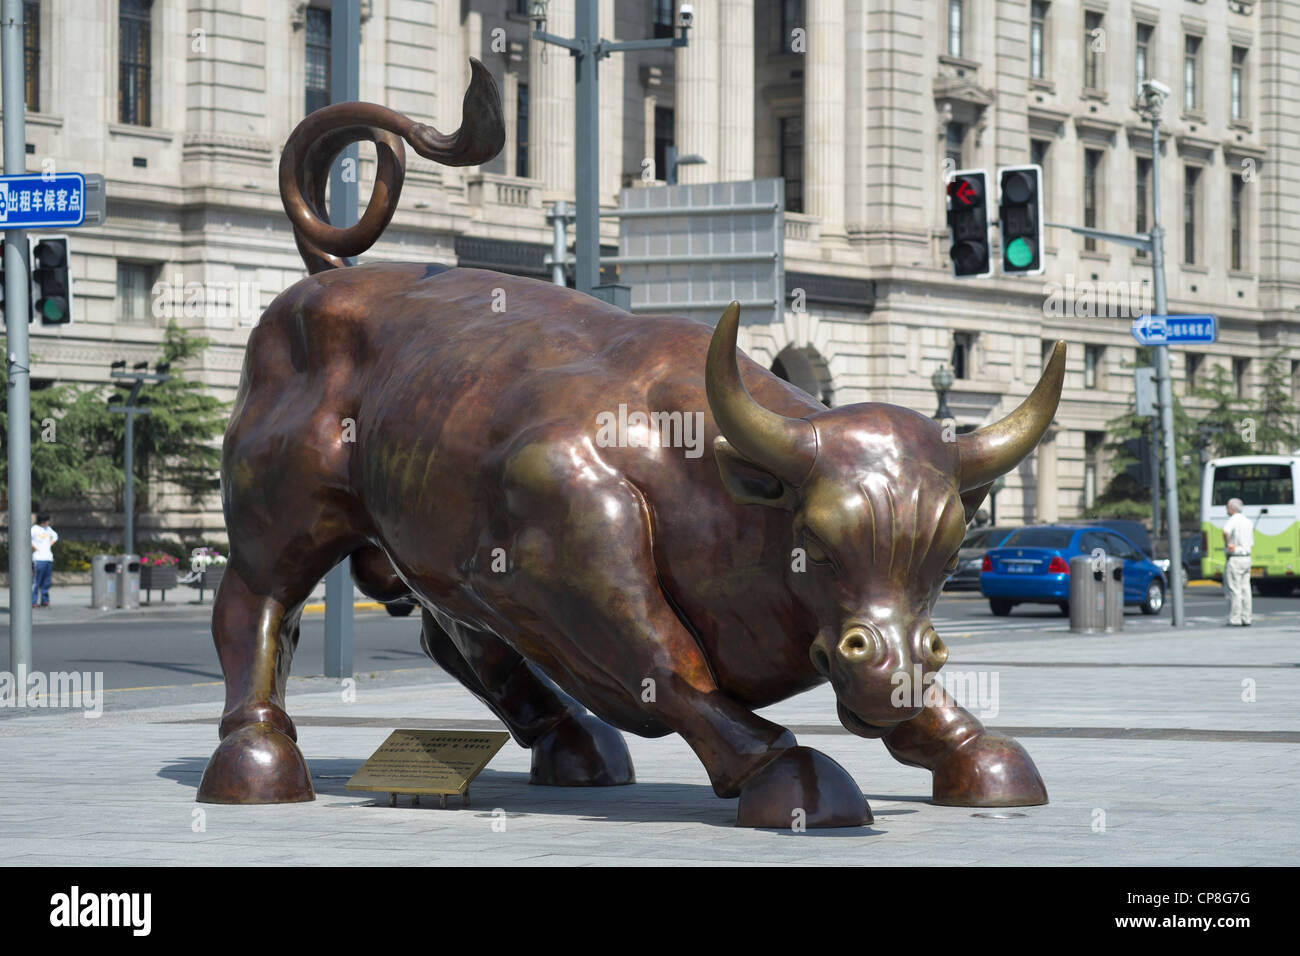 Sculpture en bronze de Bull sur le Bund de Shanghai Chine Banque D'Images